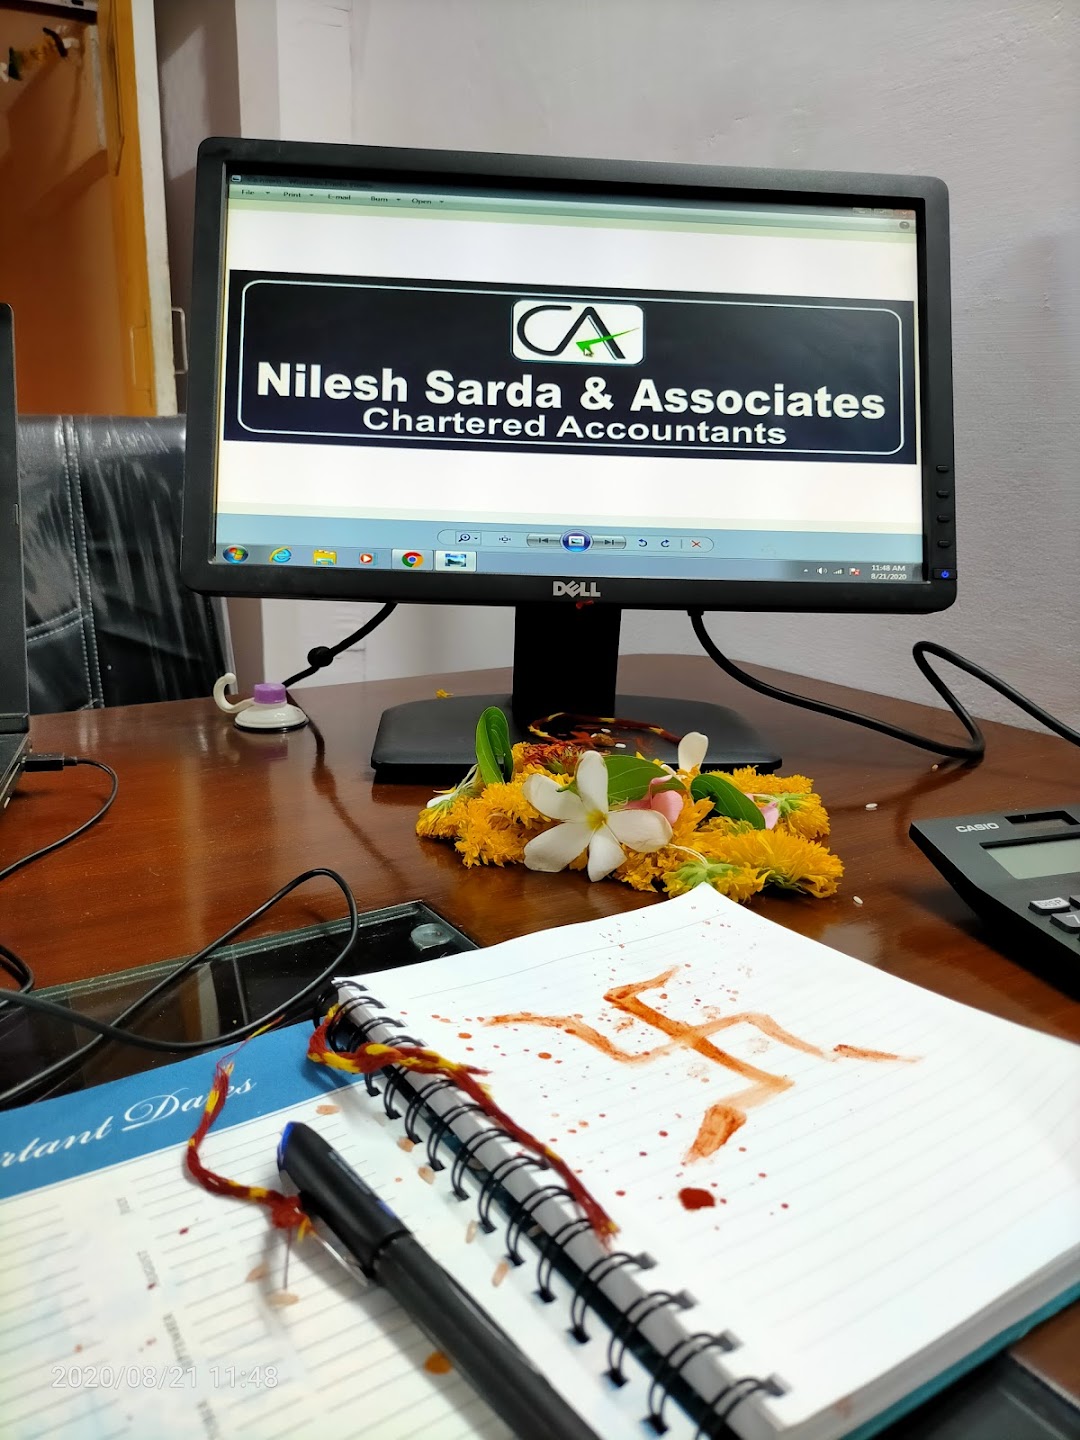 Nilesh Sarda & Associates